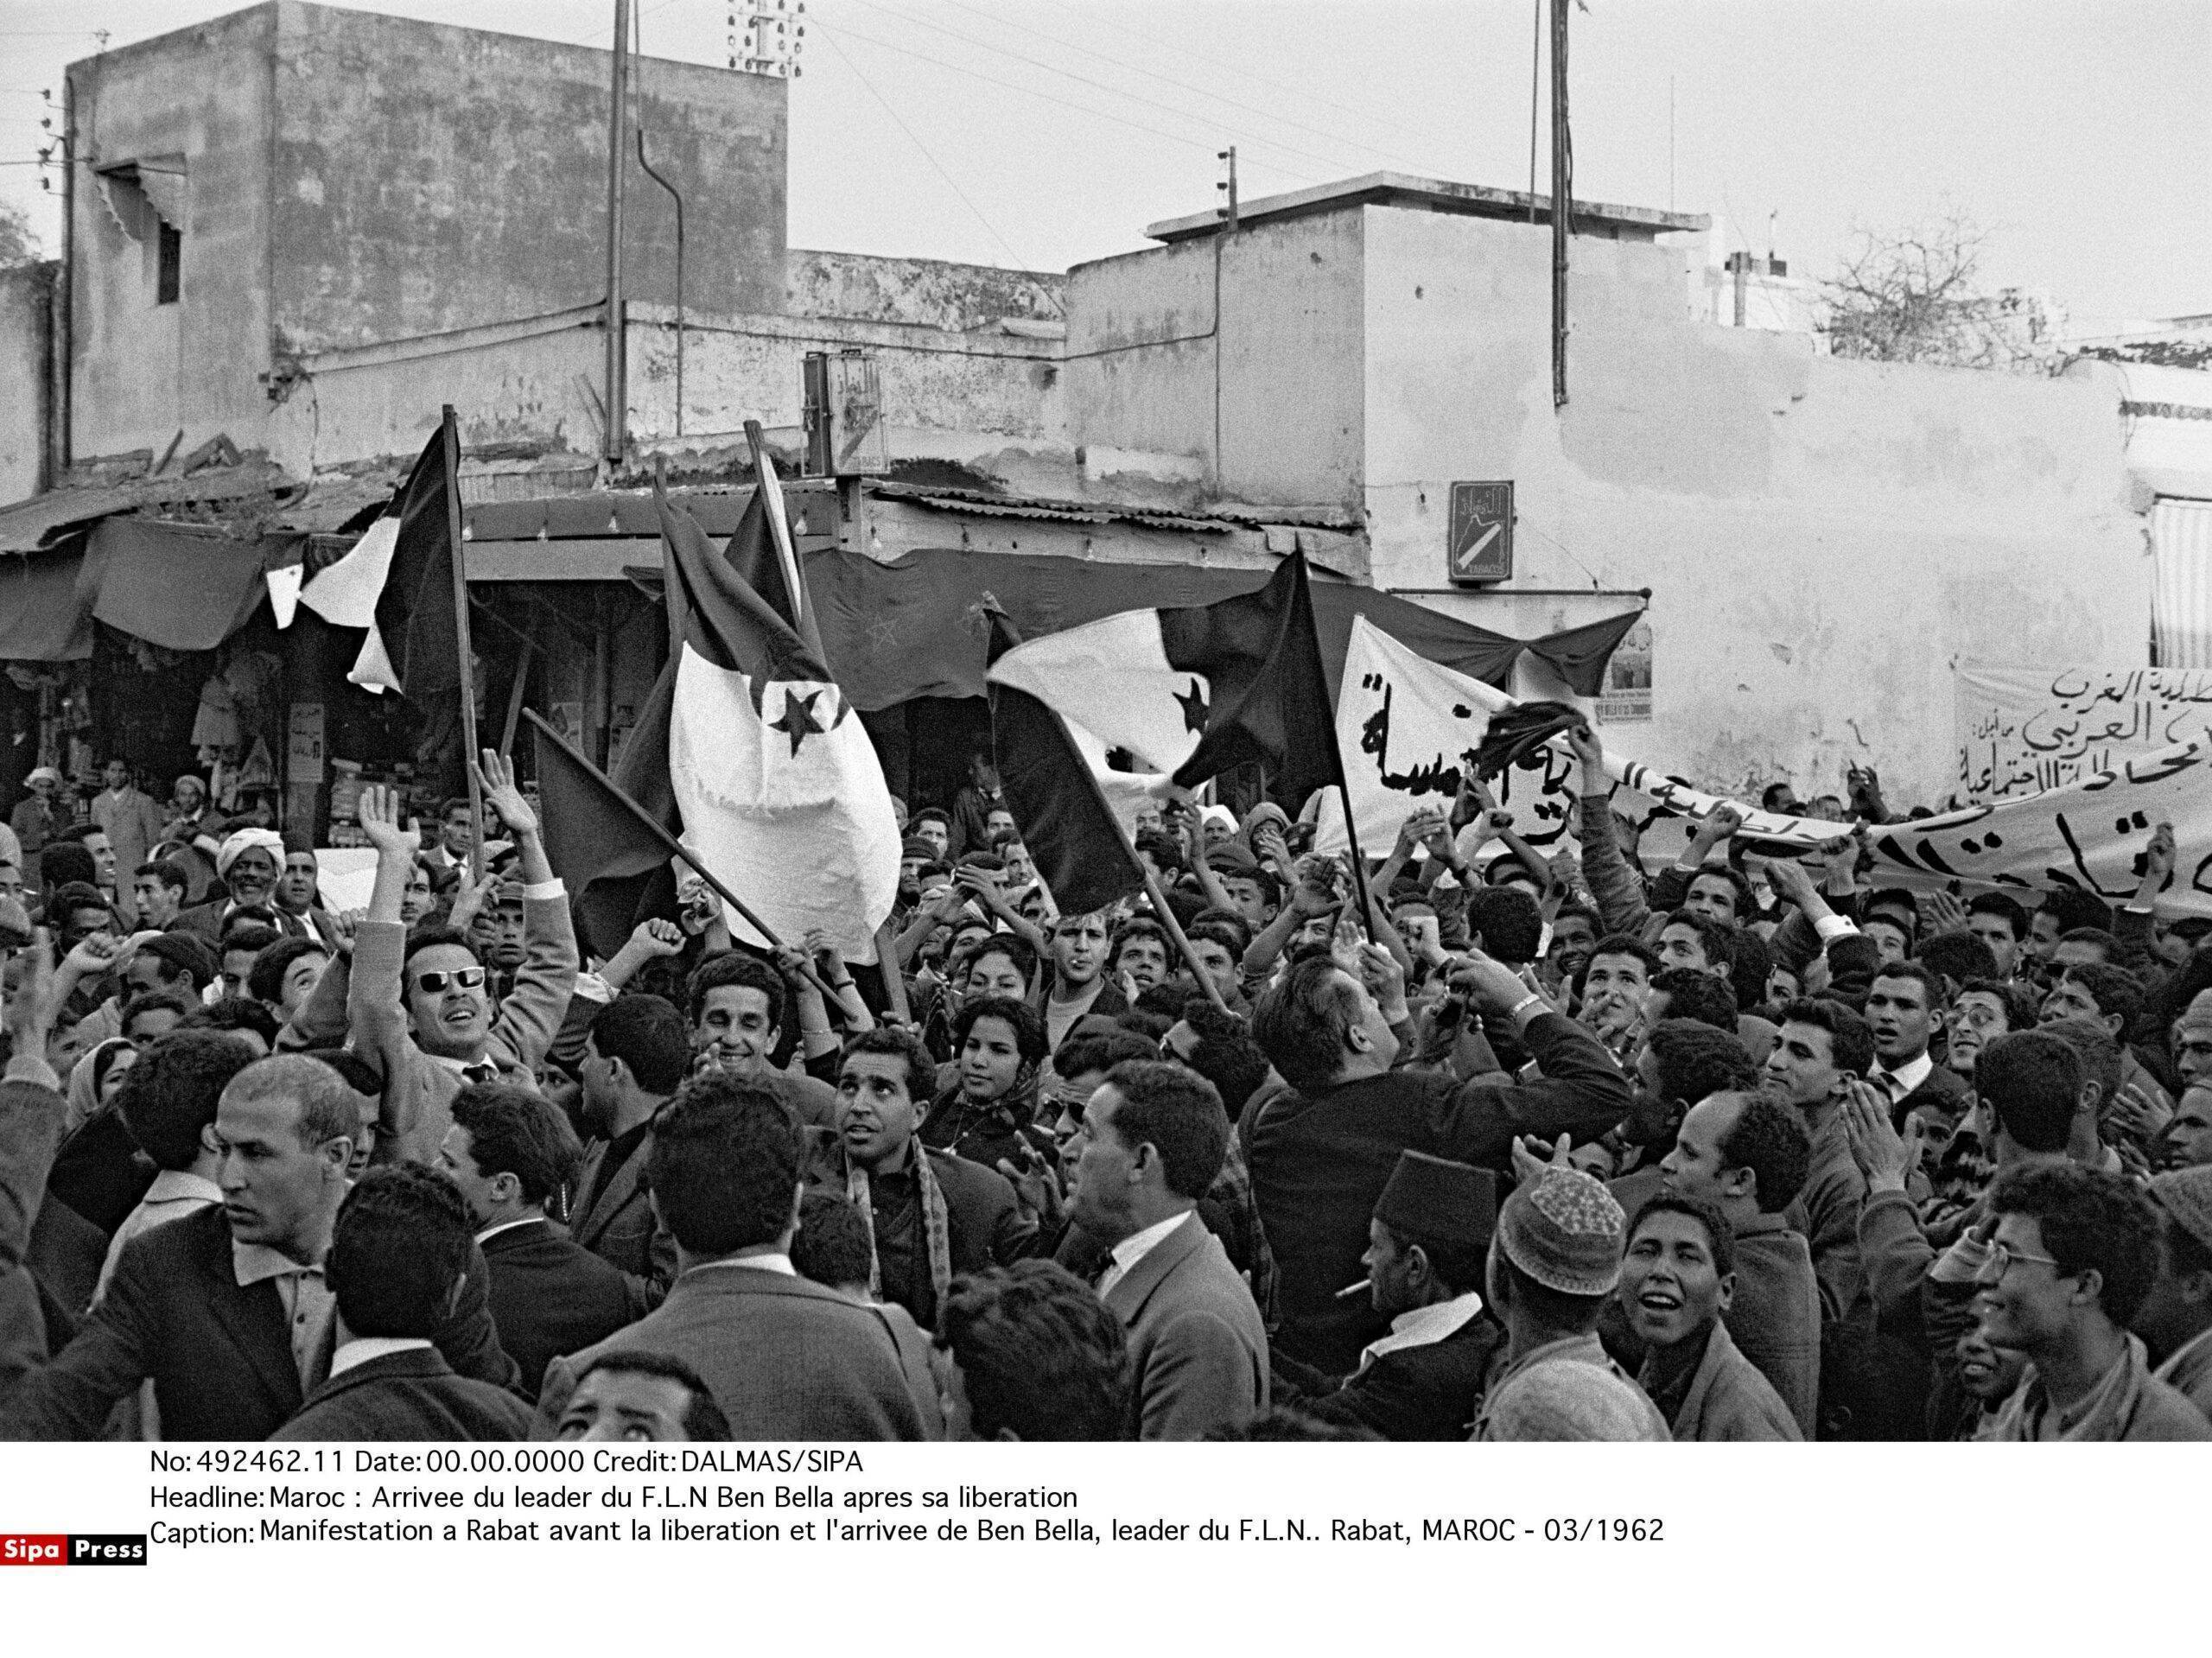 Manifestation à Rabat avant la libération et l'arrivée de Ben Bella, leader du F.L.N.. Rabat, MAROC - 03/1962 - Crédit photo : SIPA